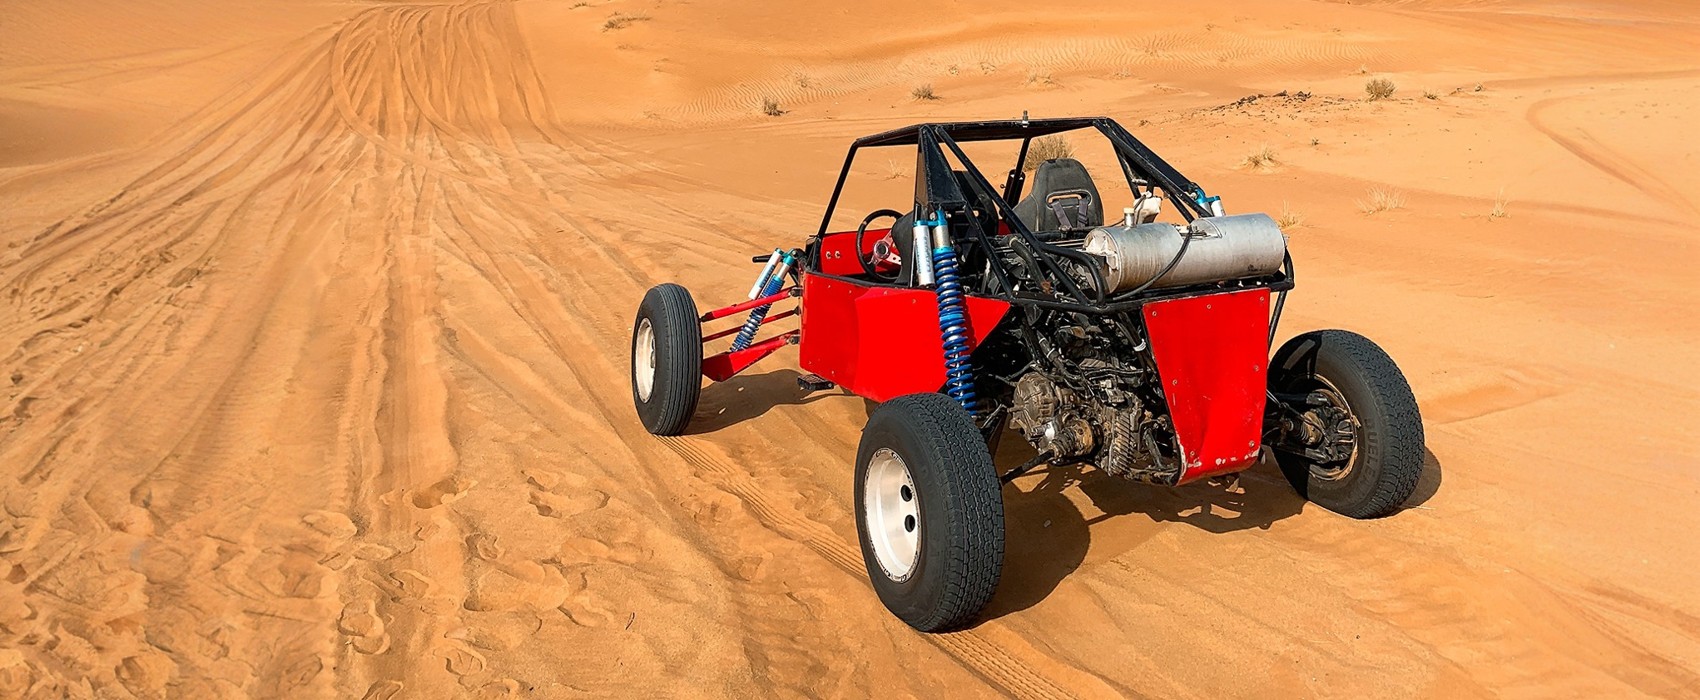 dune buggy ride in dubai